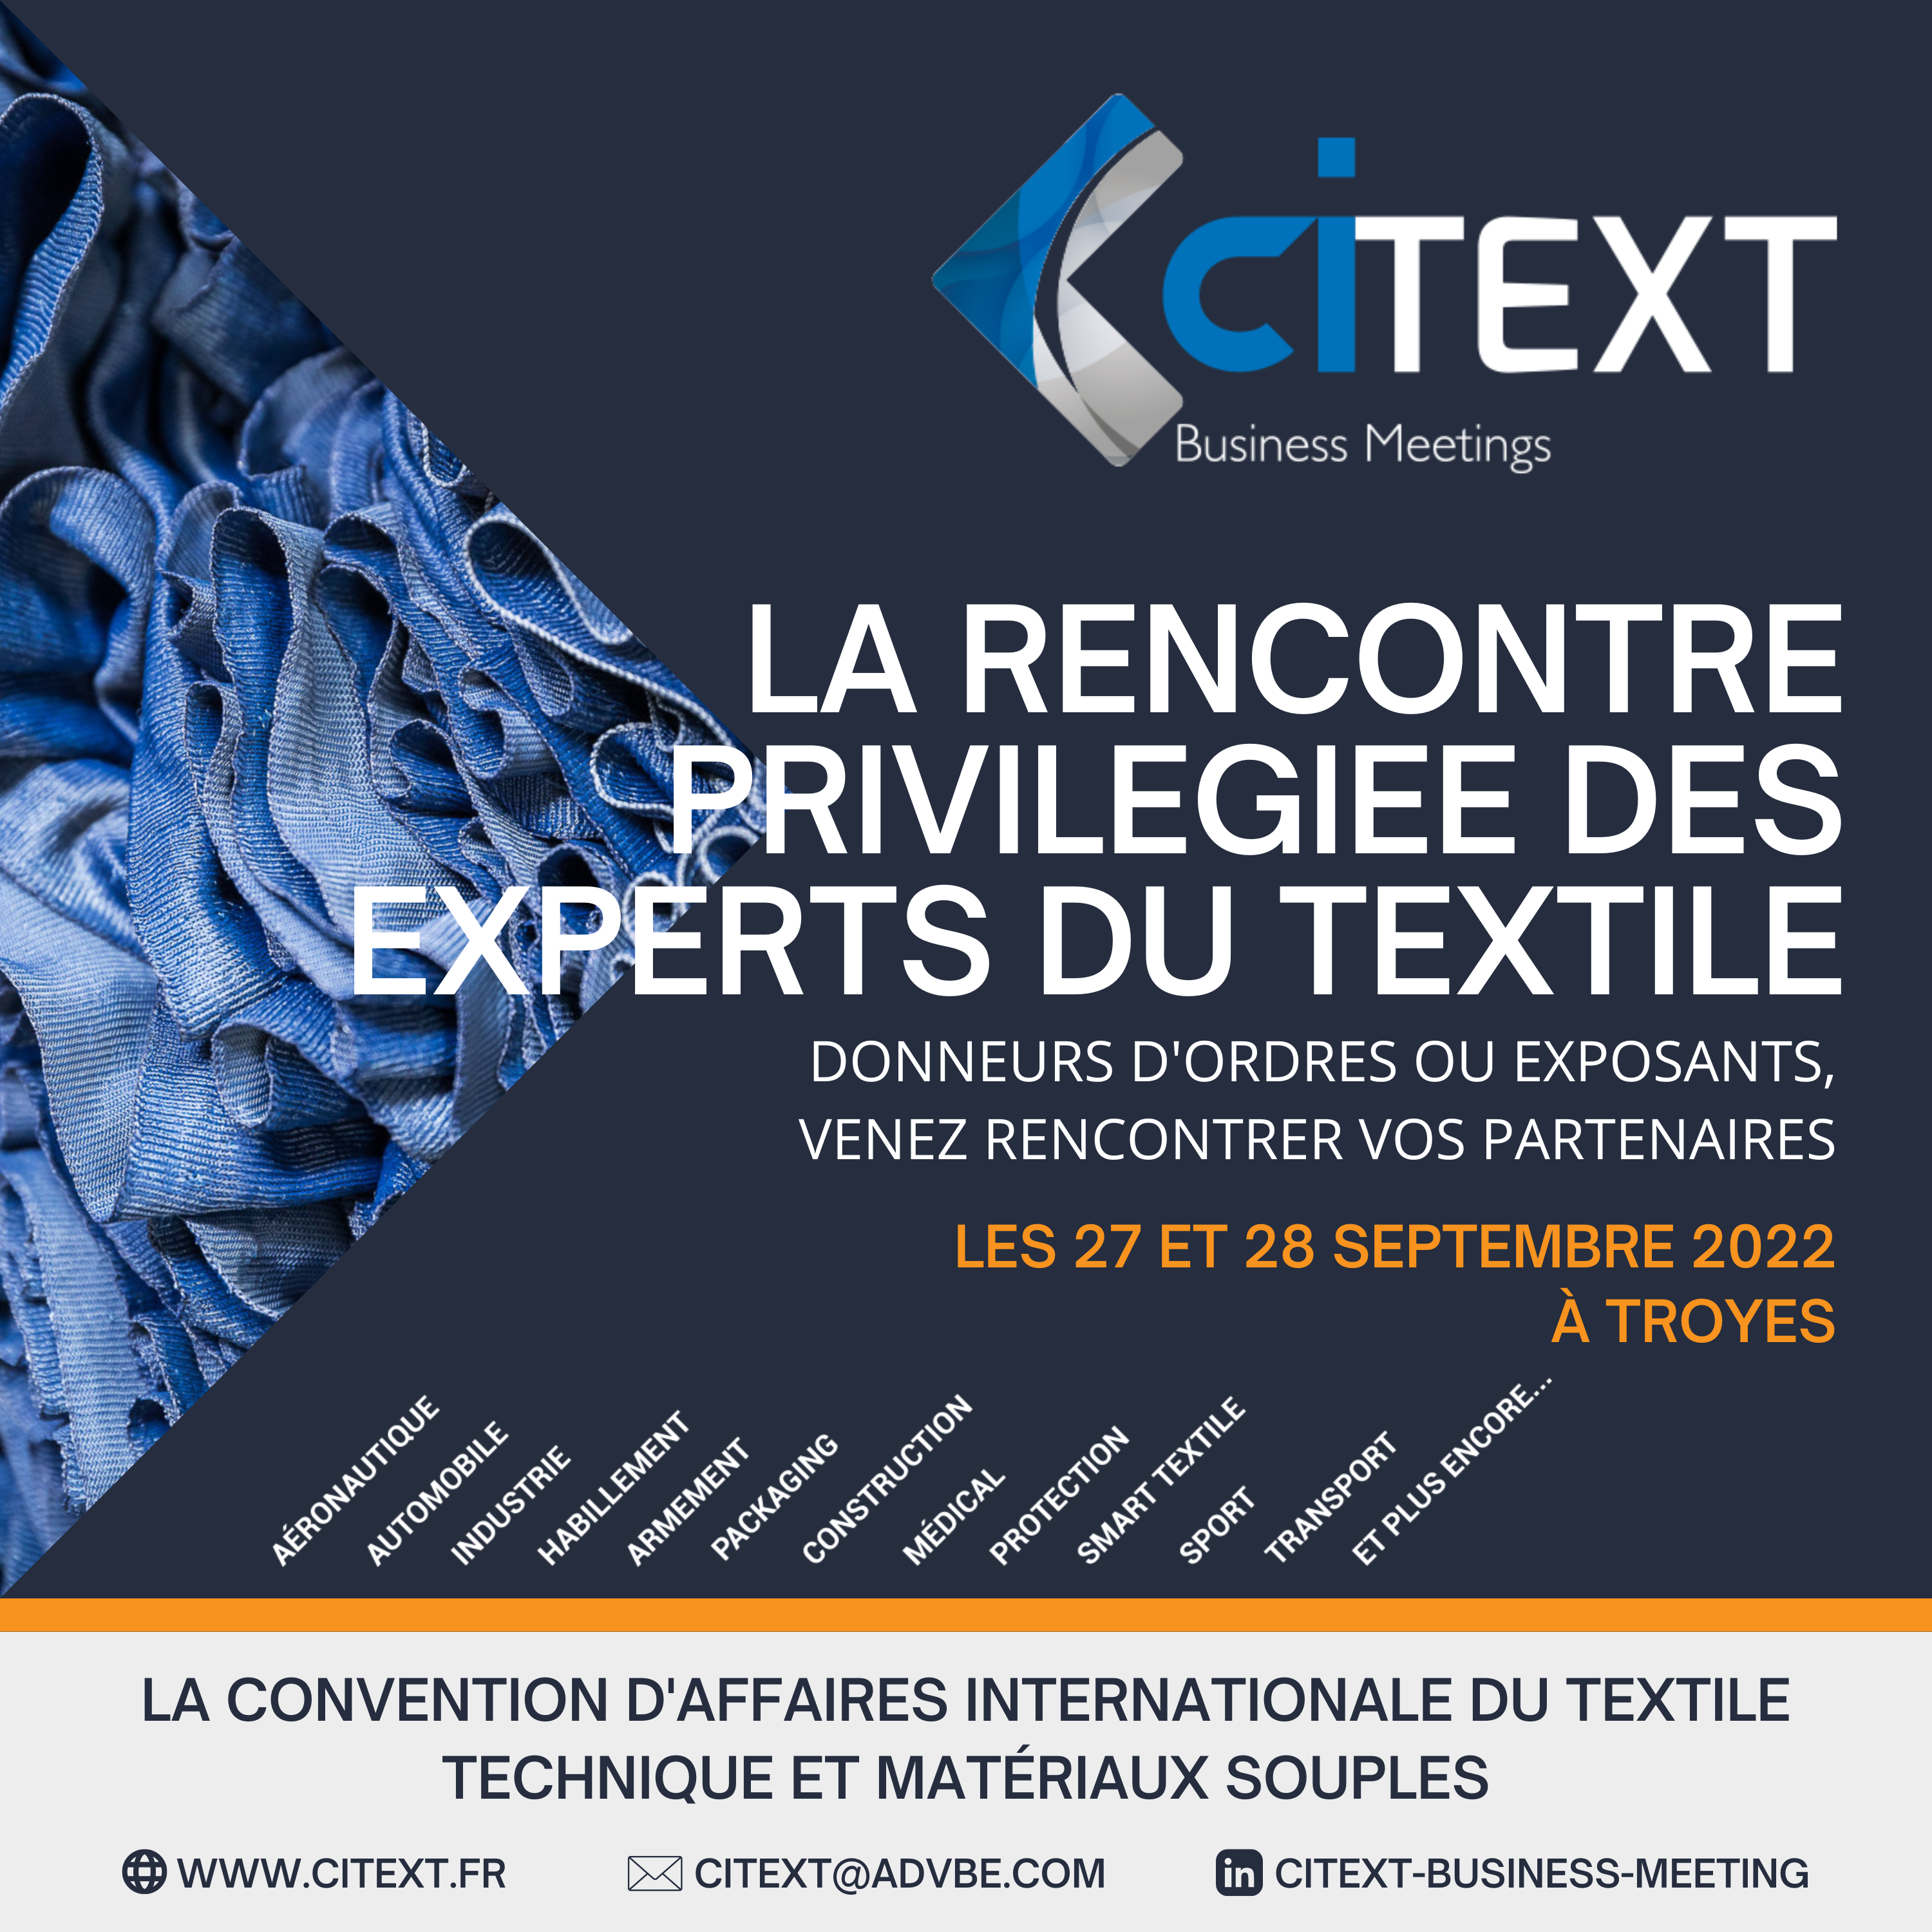 Textiles à usages techniques :  l’industrie textile française se retrouve à Troyes pour la convention internationale CITEXT 